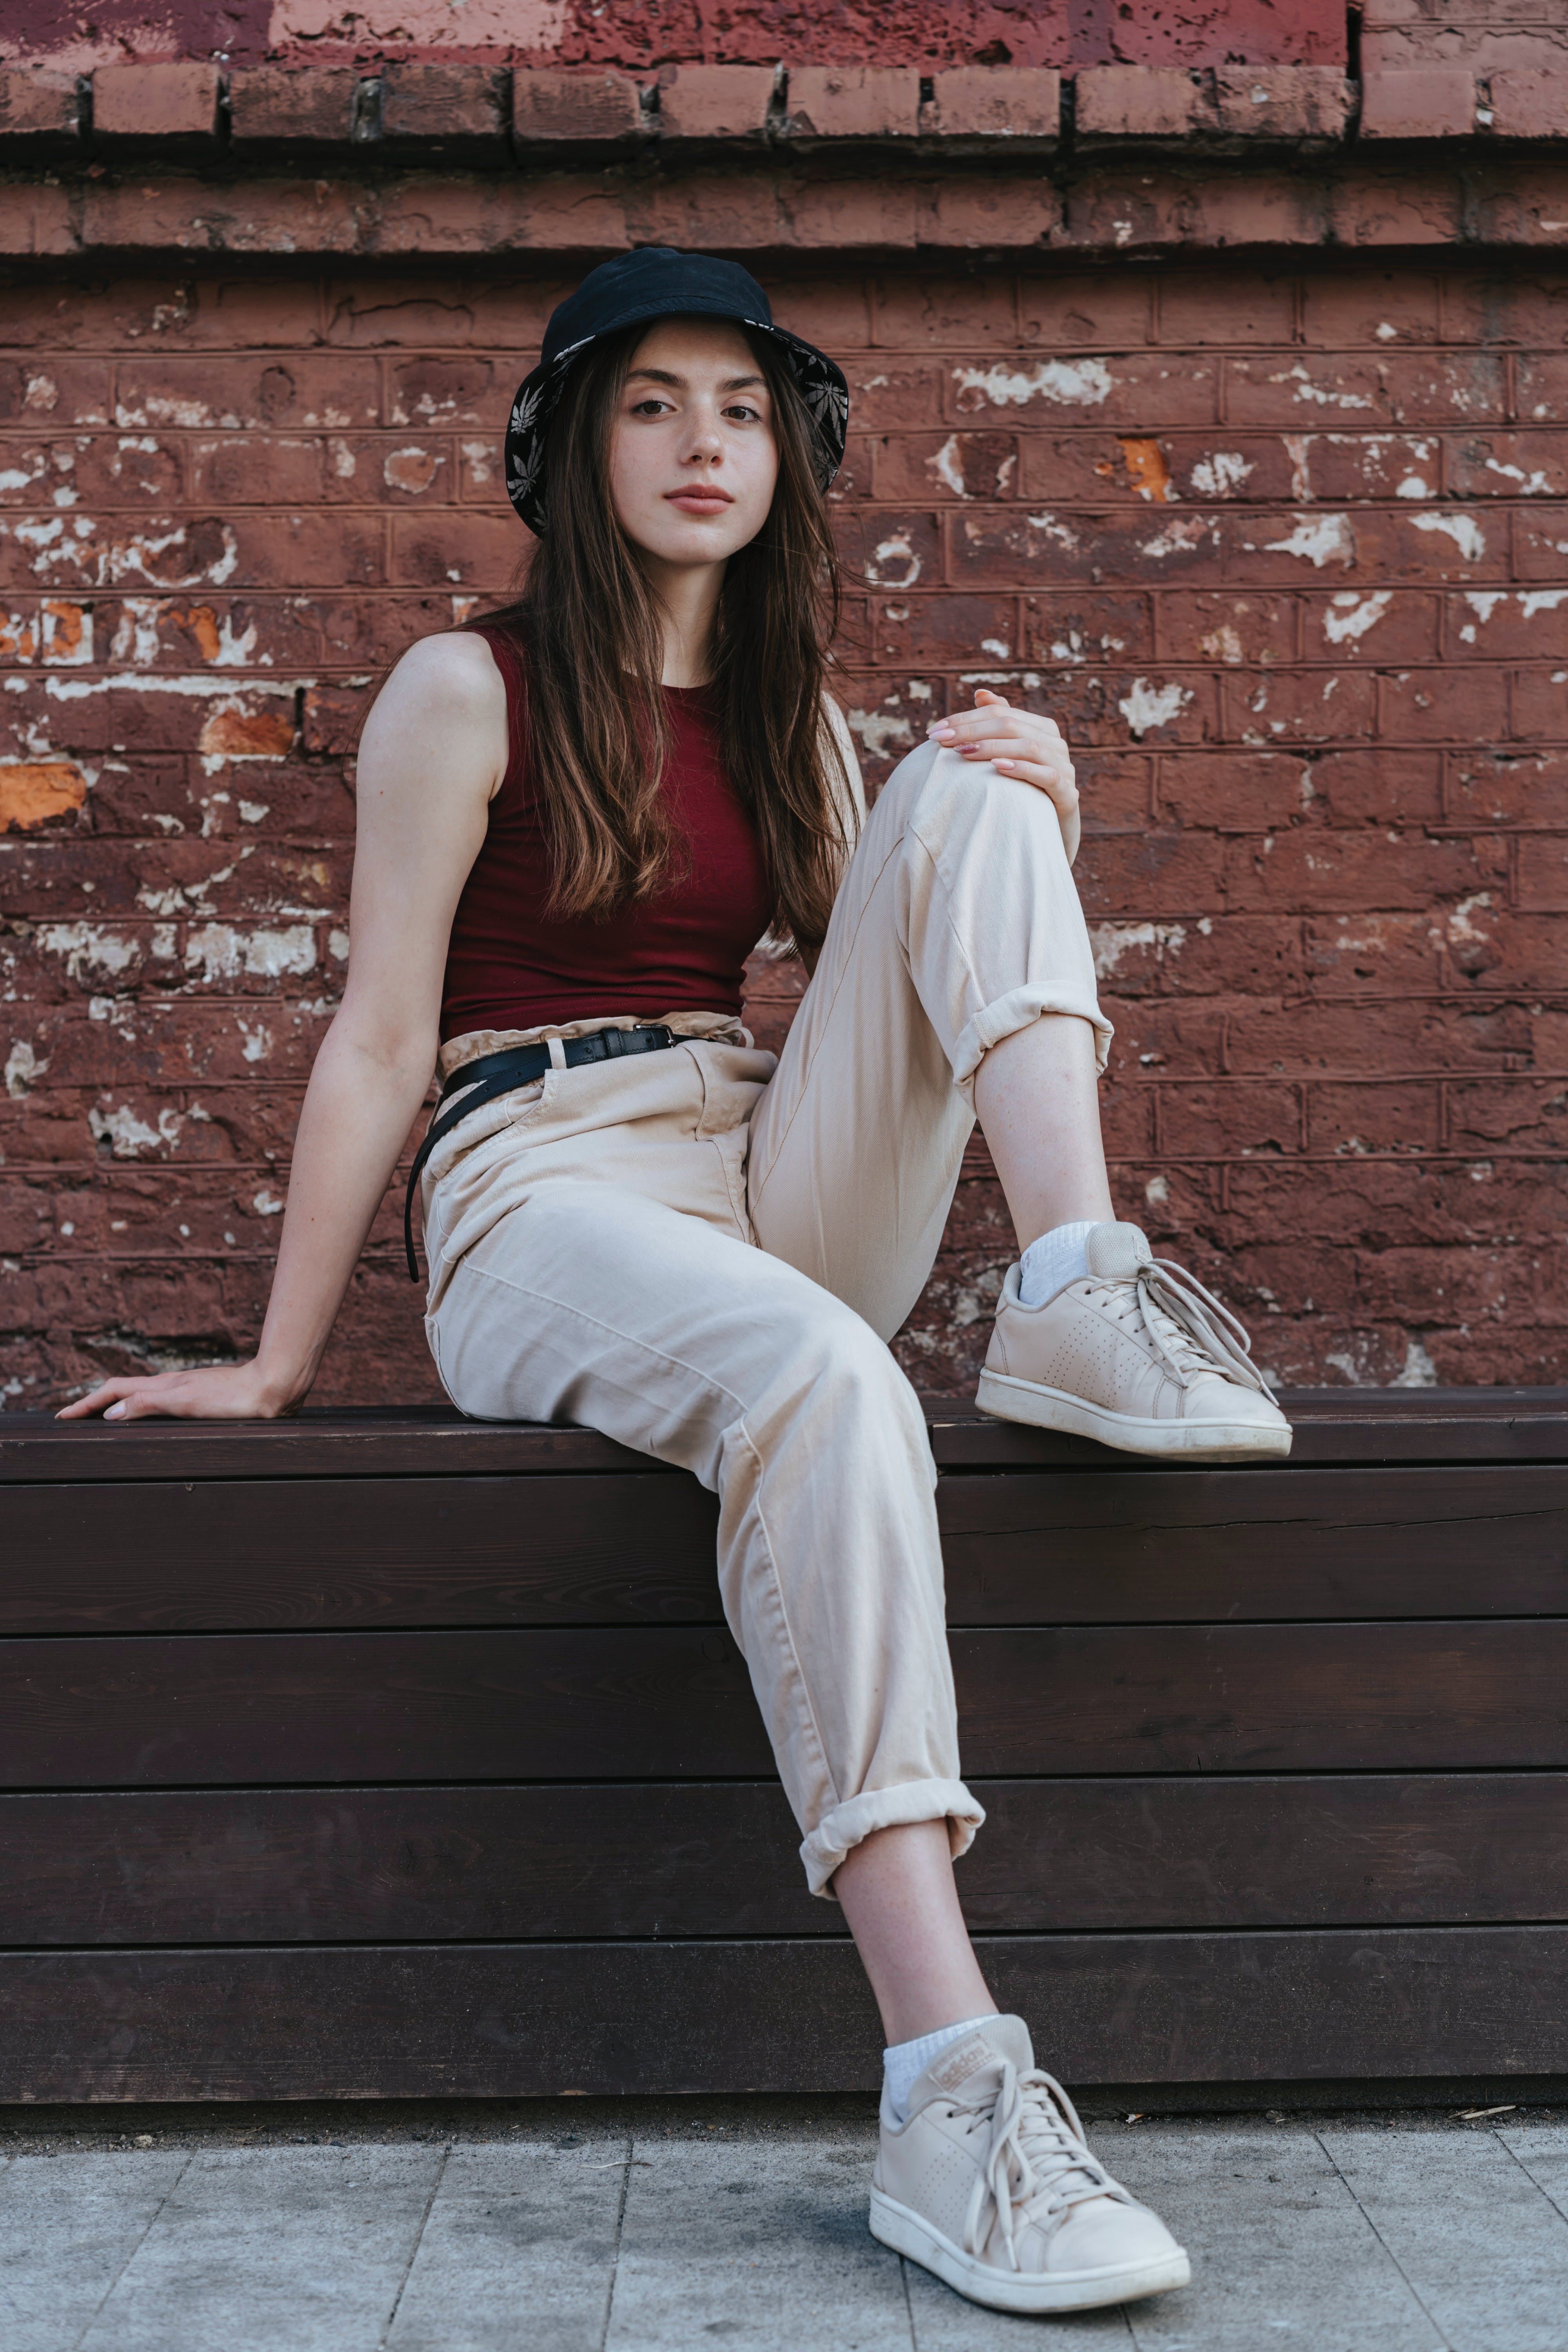 Une jeune fille assise près d'un mur | Source : Pexels